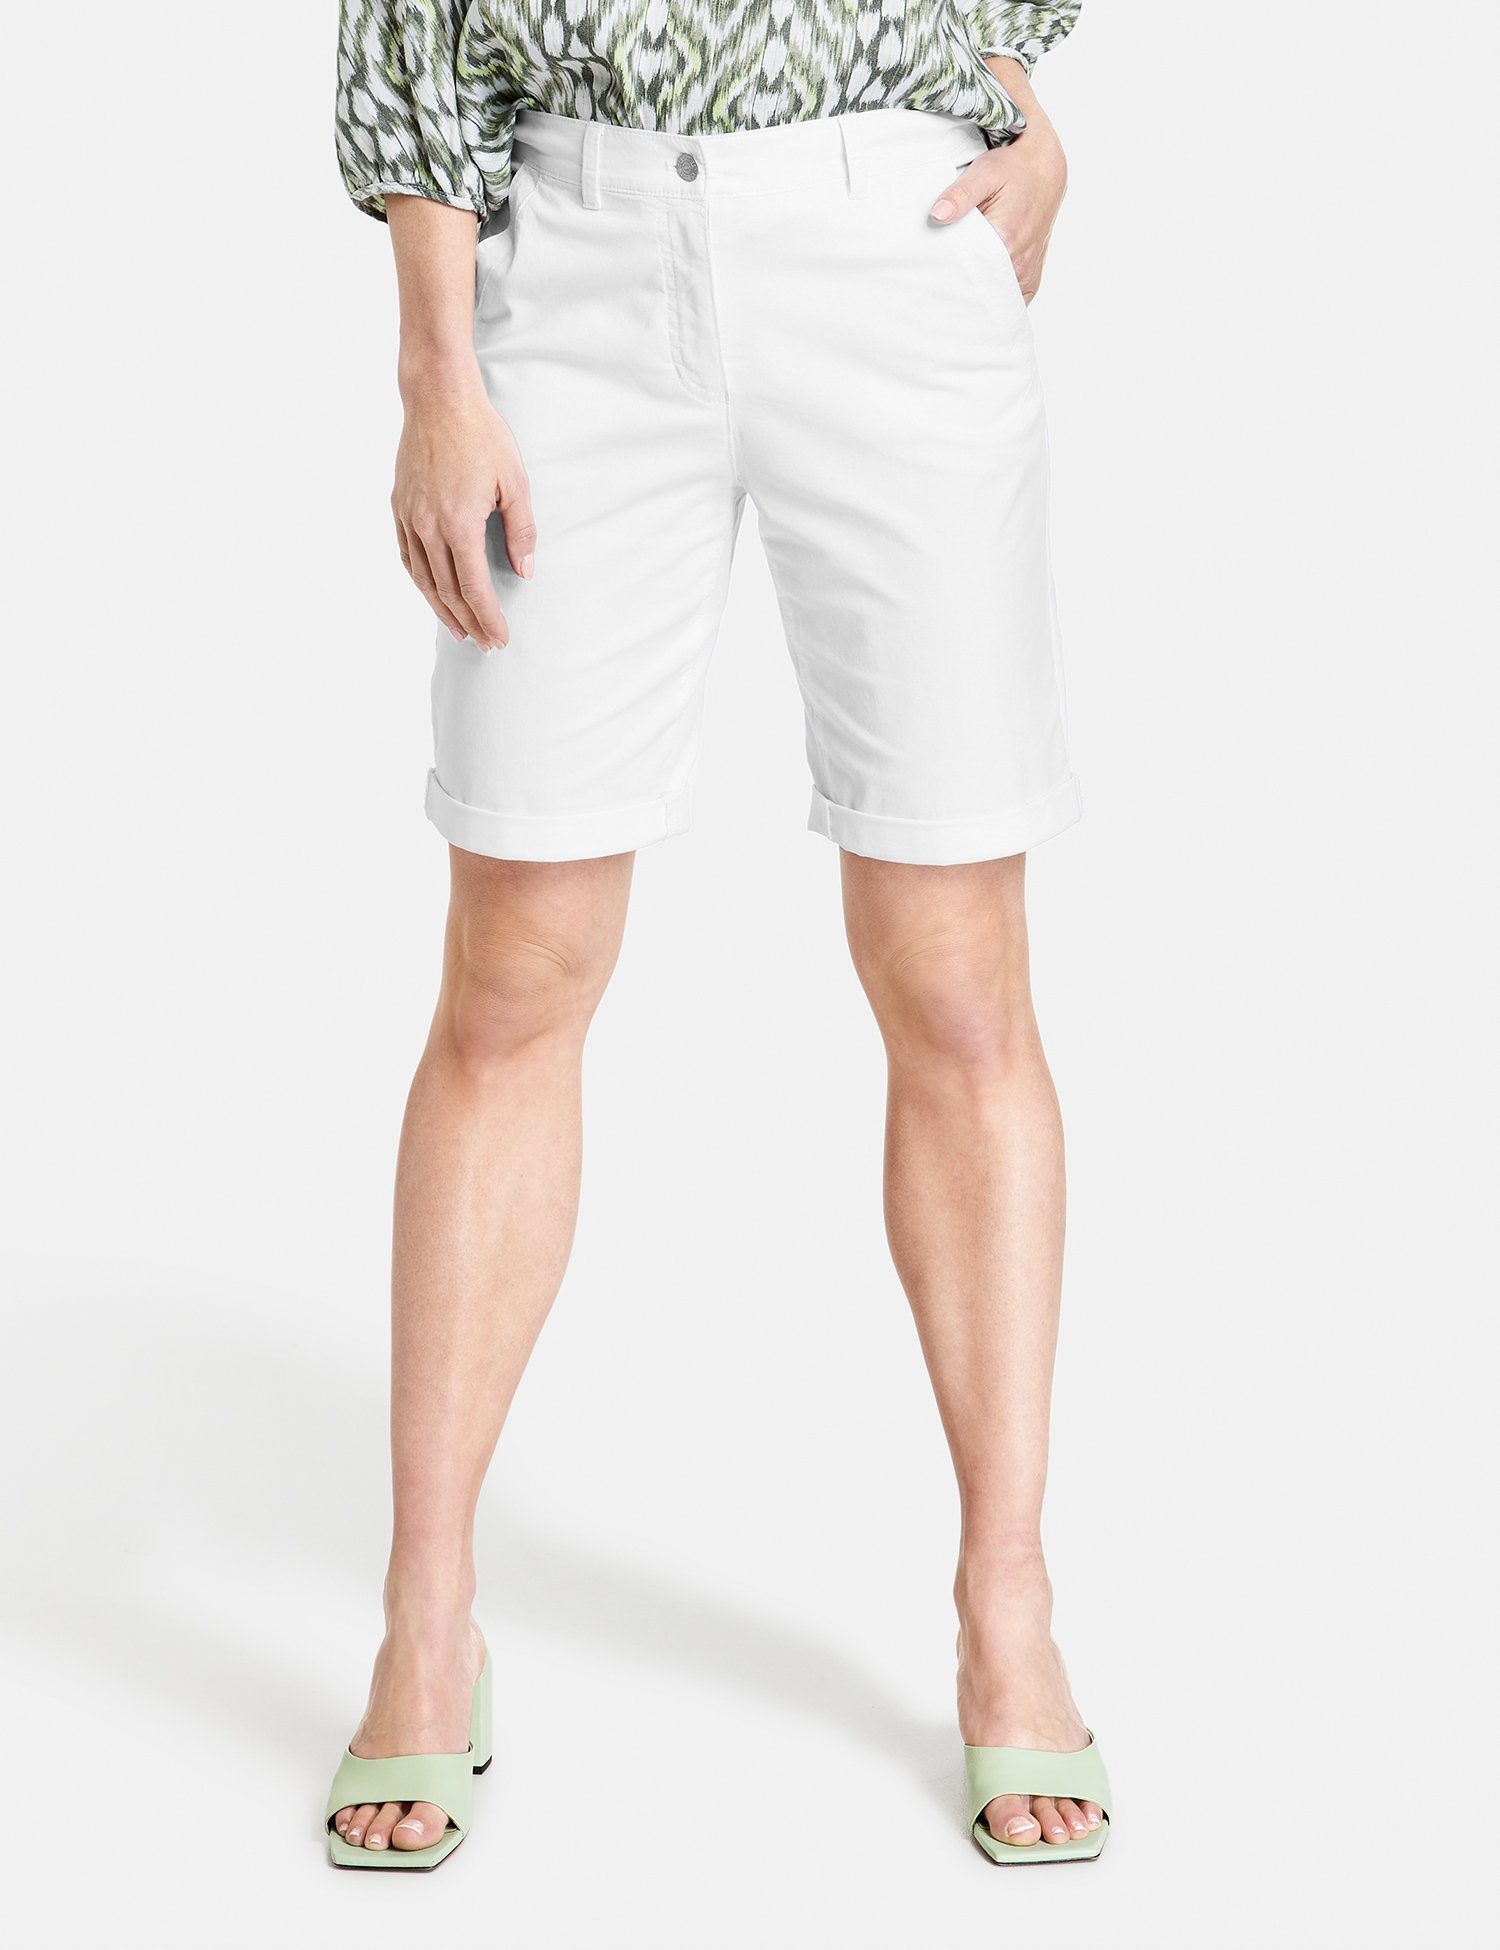 GERRY WEBER 7/8-Hose Shorts mit gekrempeltem Saum weiß/weiß